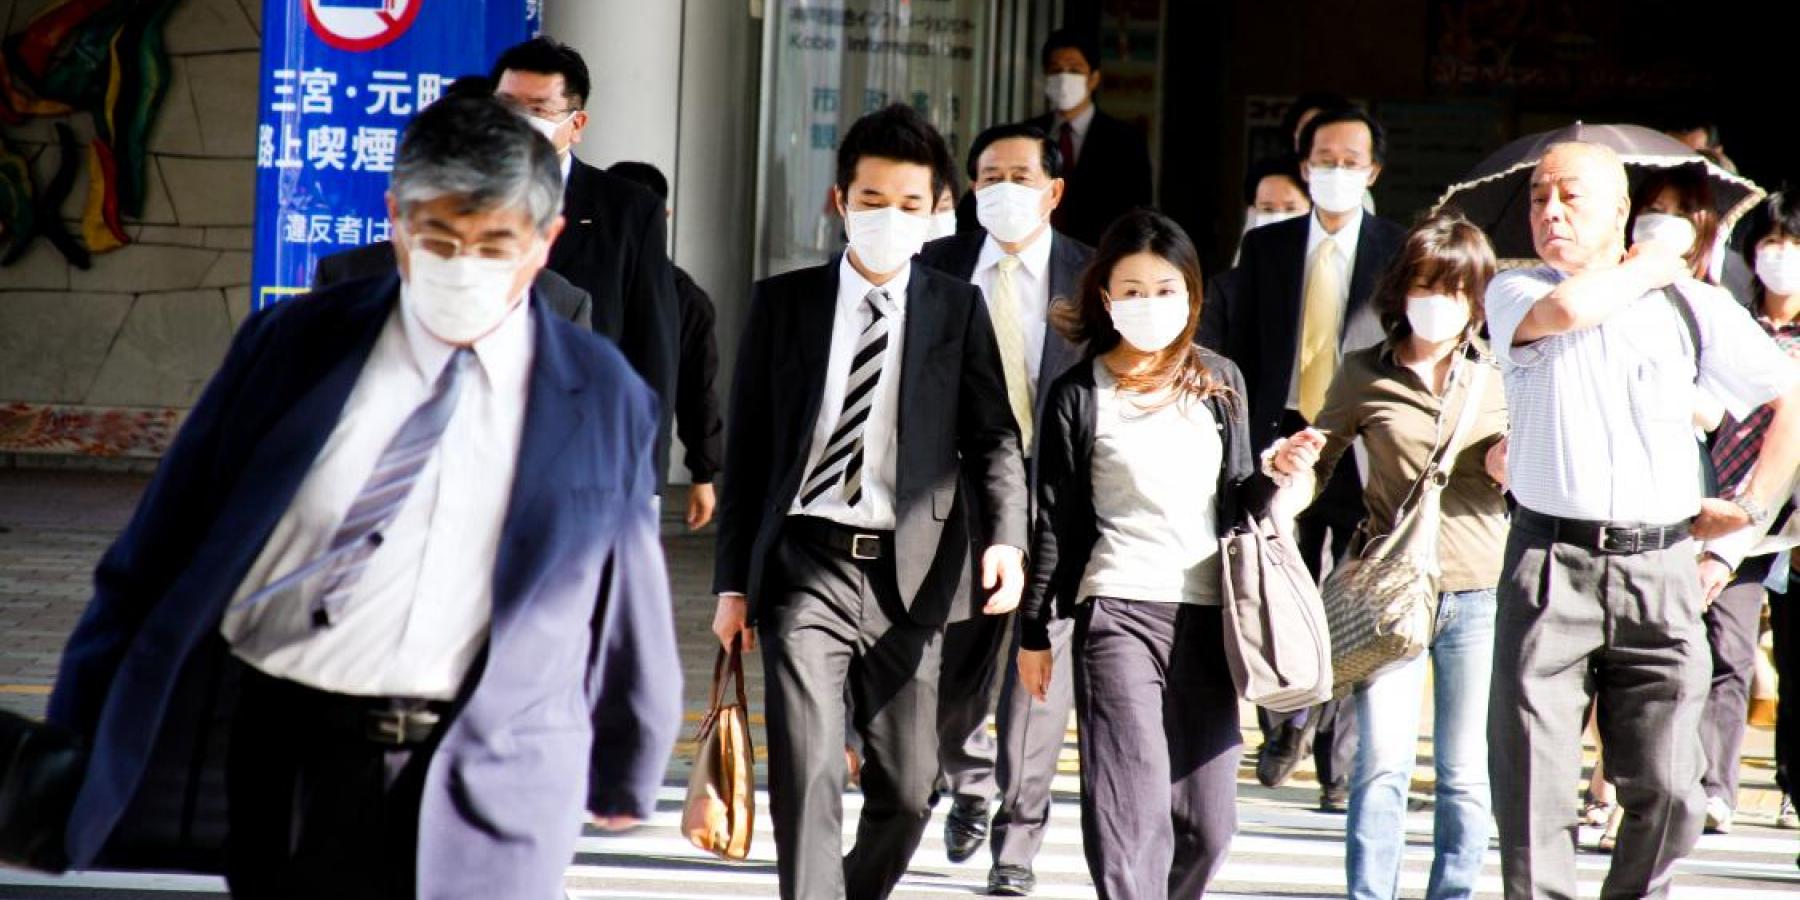 NCD Alliance Japan renewed | People in Japan © Shutterstock